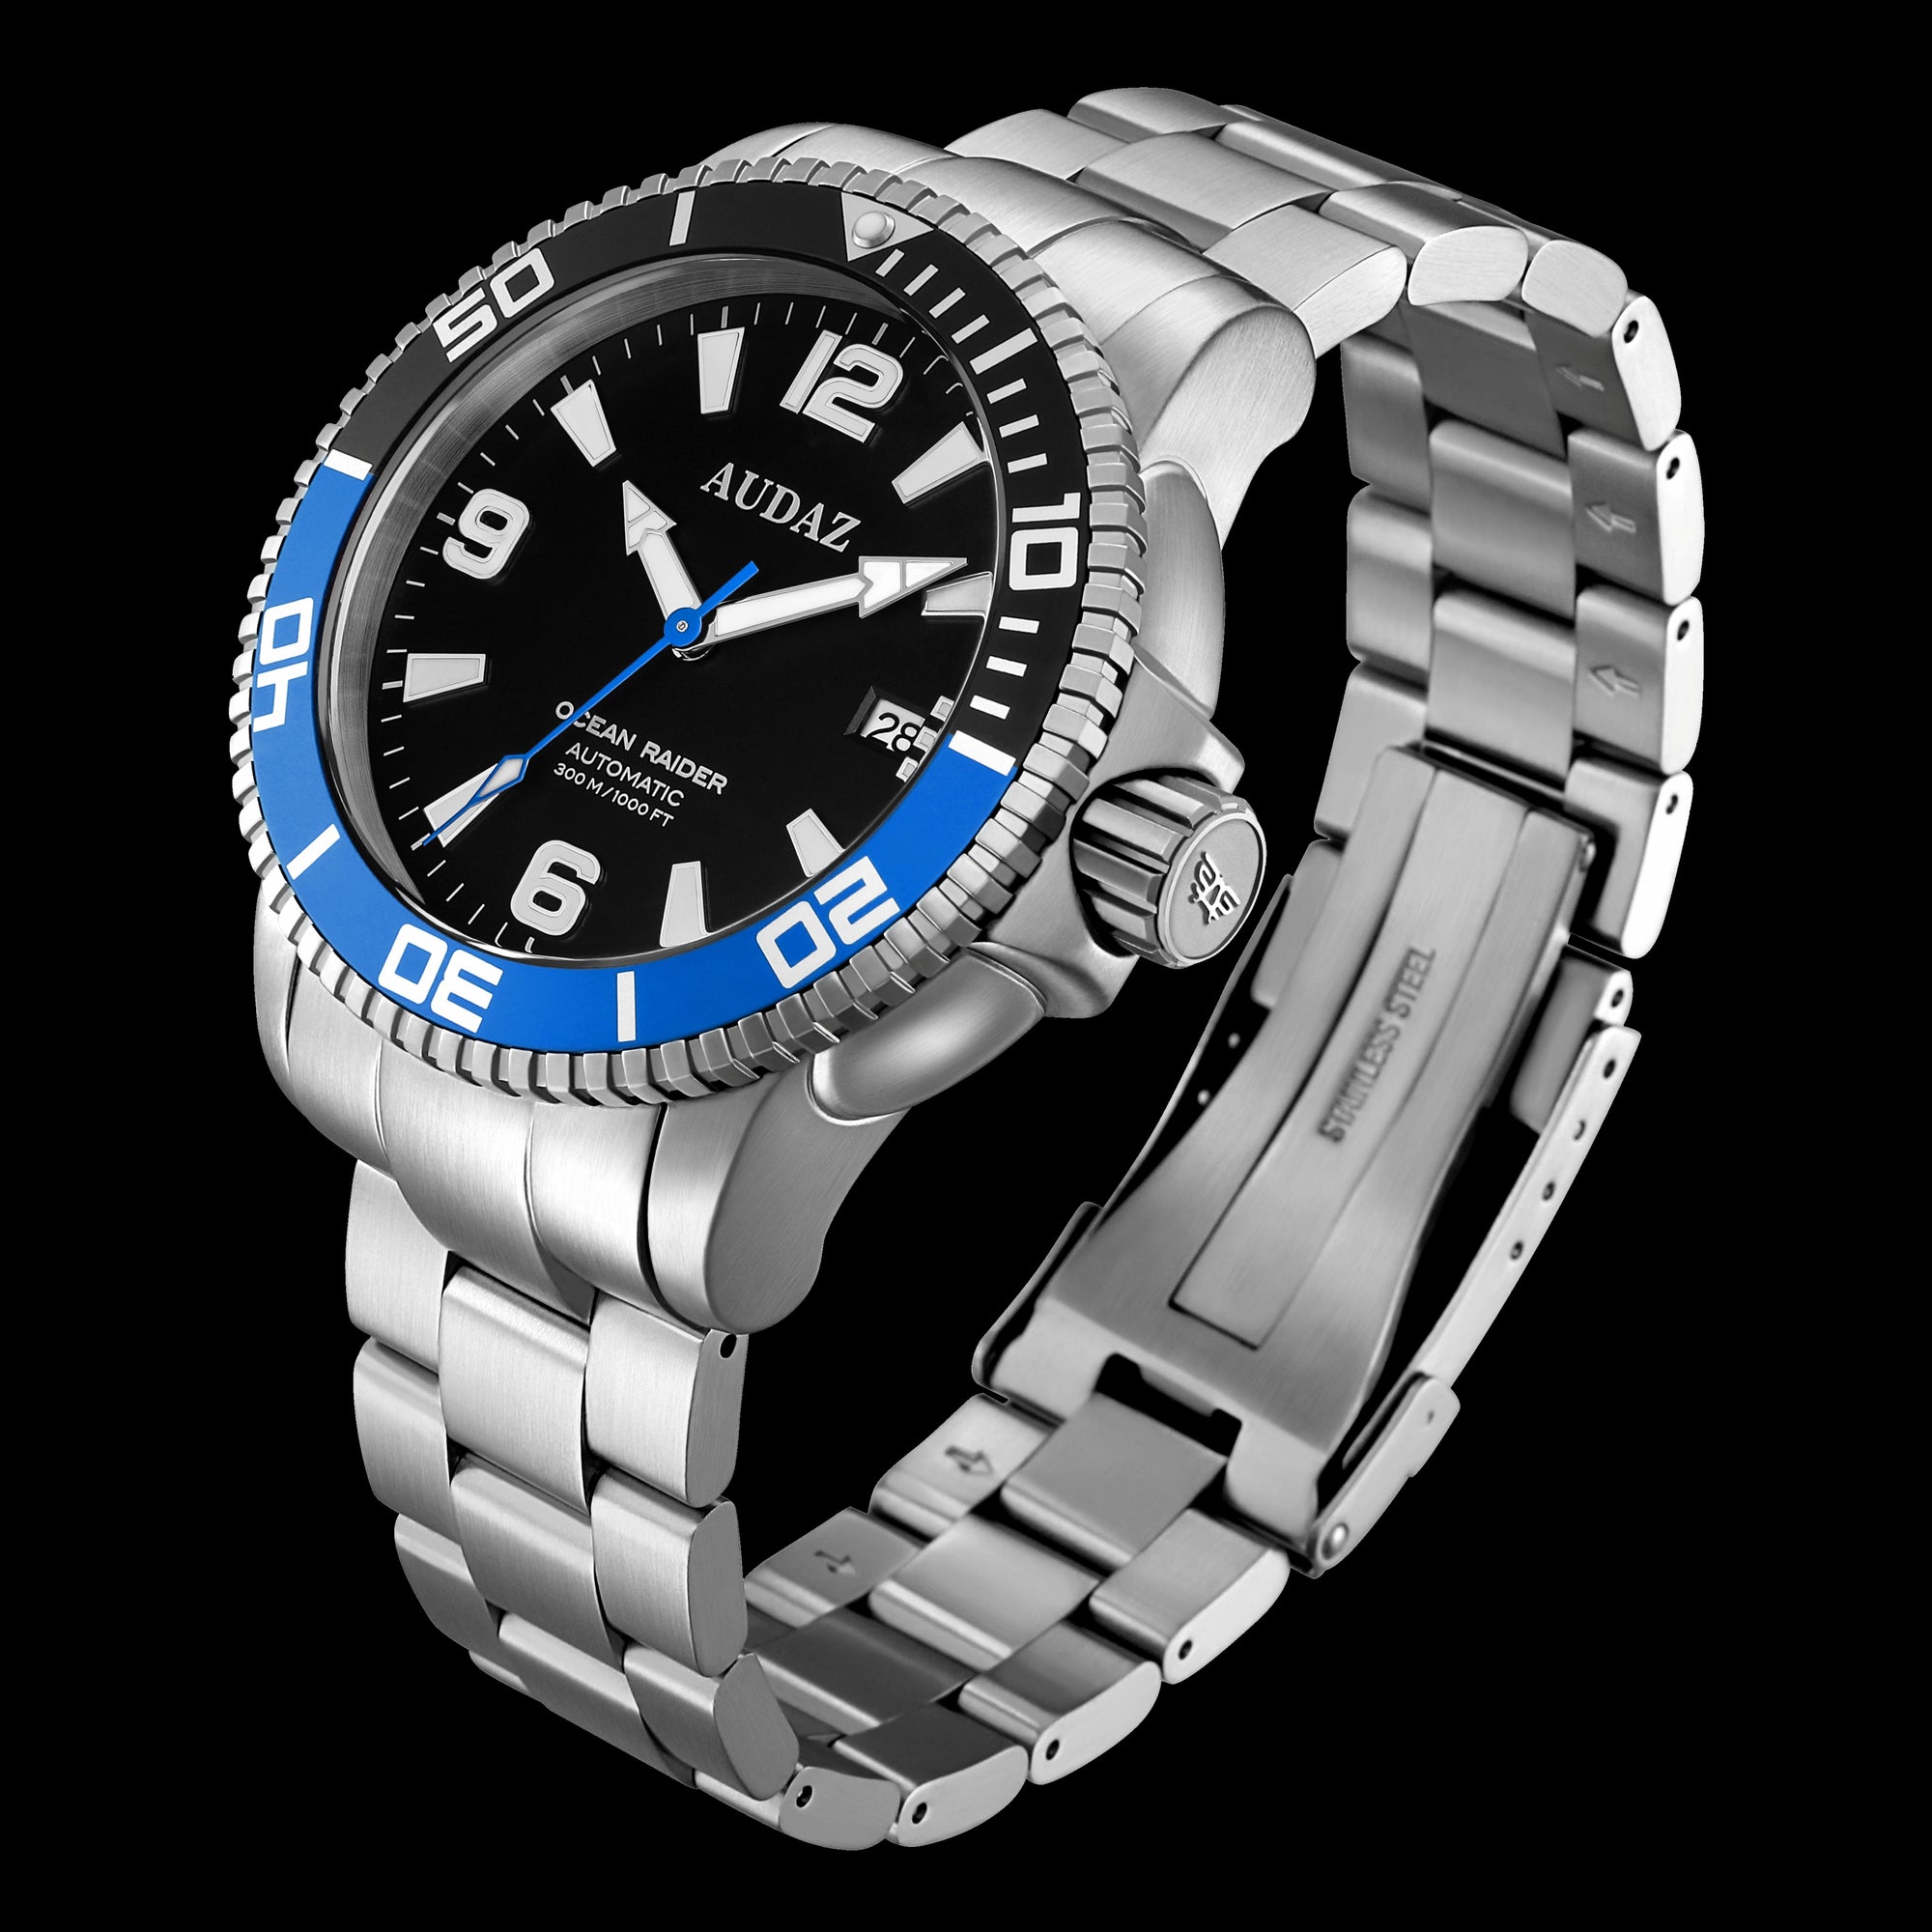 OCEAN RAIDER Watches ADZ-2060-03